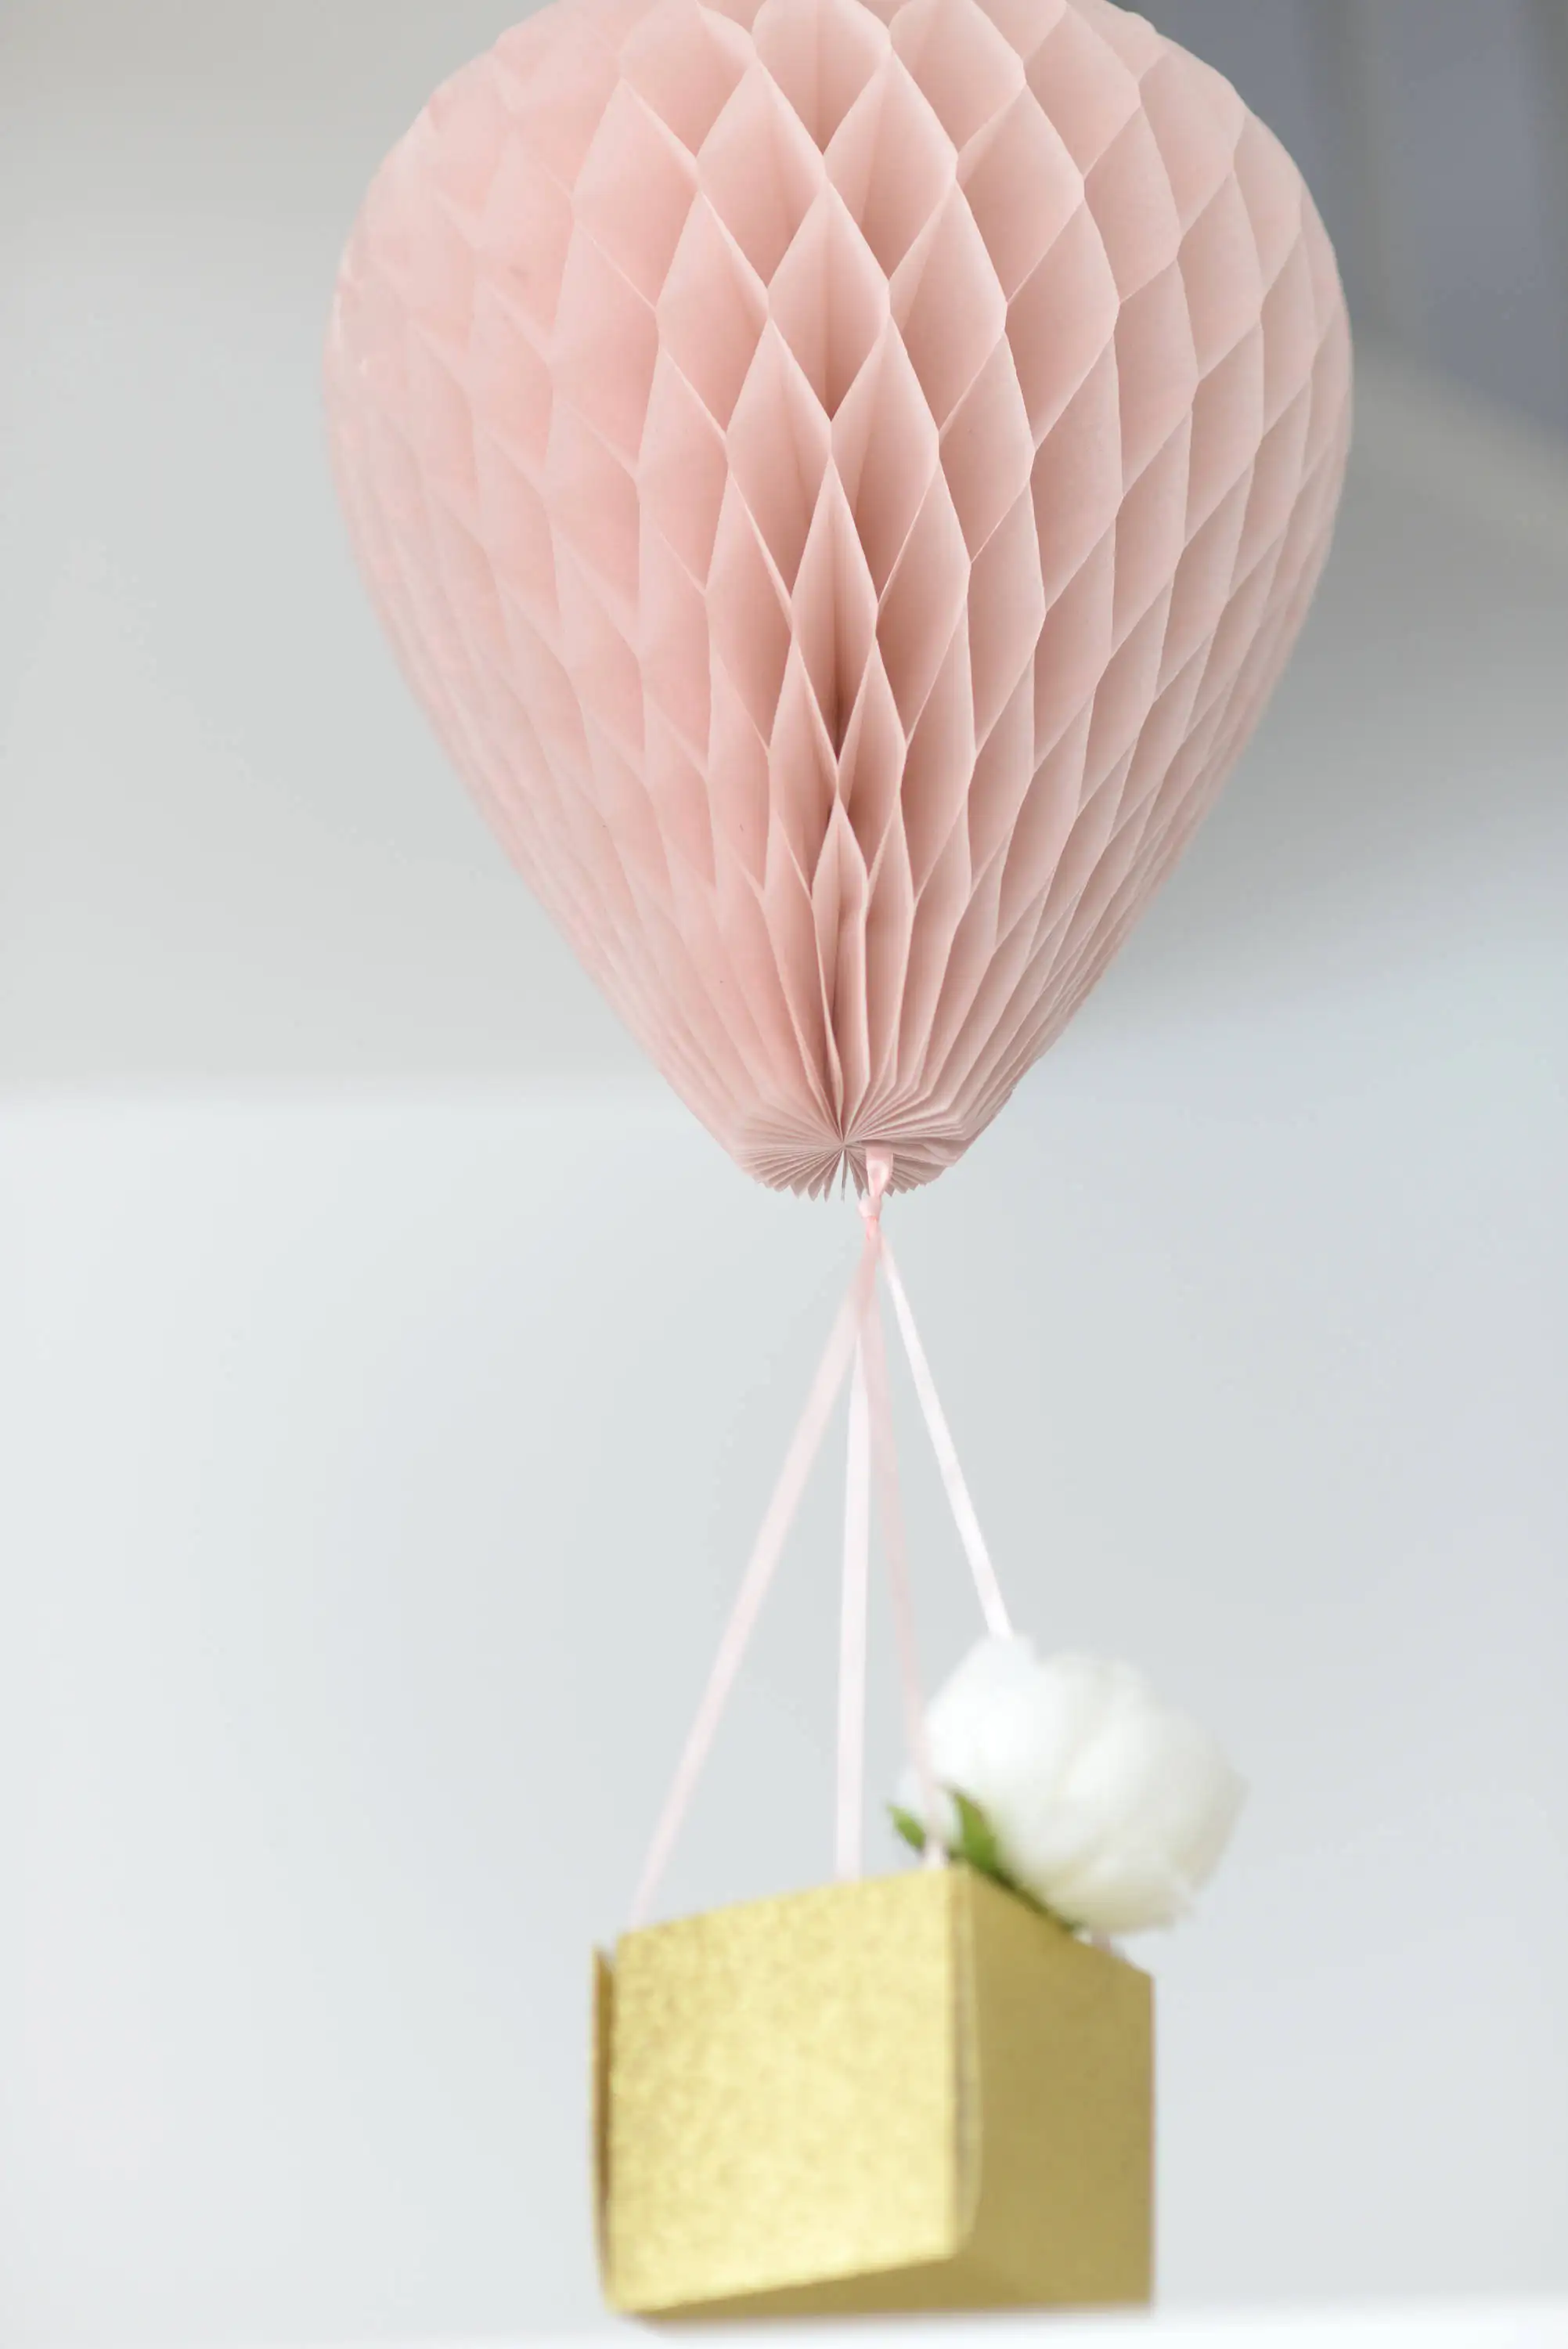 Ballon à Air chaud boule nid d'abeille avec panier en papier personnalisé cadeau ballon à air chaud décor nid d'abeille pour mariage bébé douche décoration